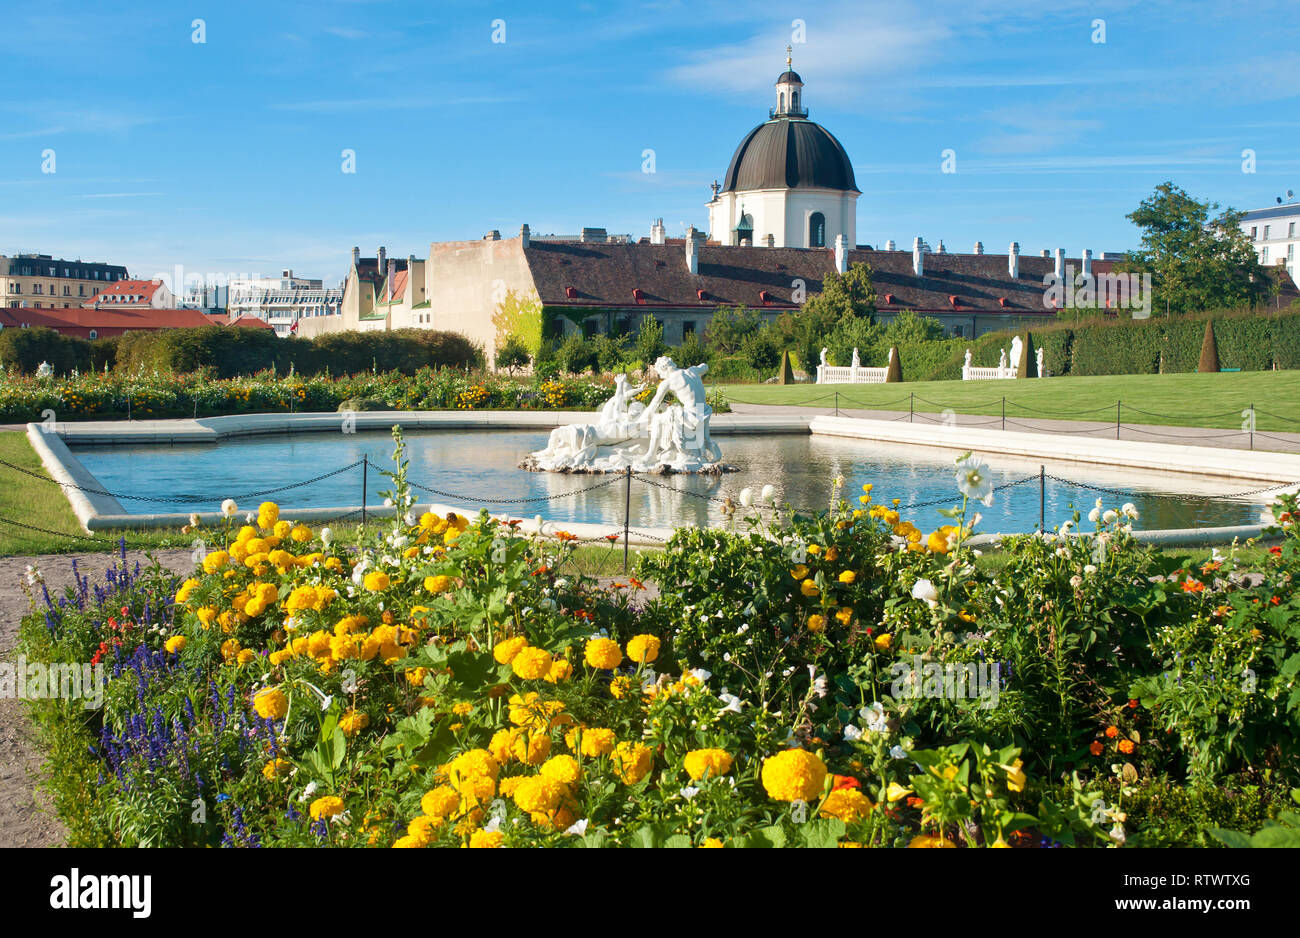 Vue sur un dôme à proximité du palais du Belvédère, parterre de fleurs et plusieurs statues blanches de personnes dans l'eau d'un étang contre un ciel b Banque D'Images